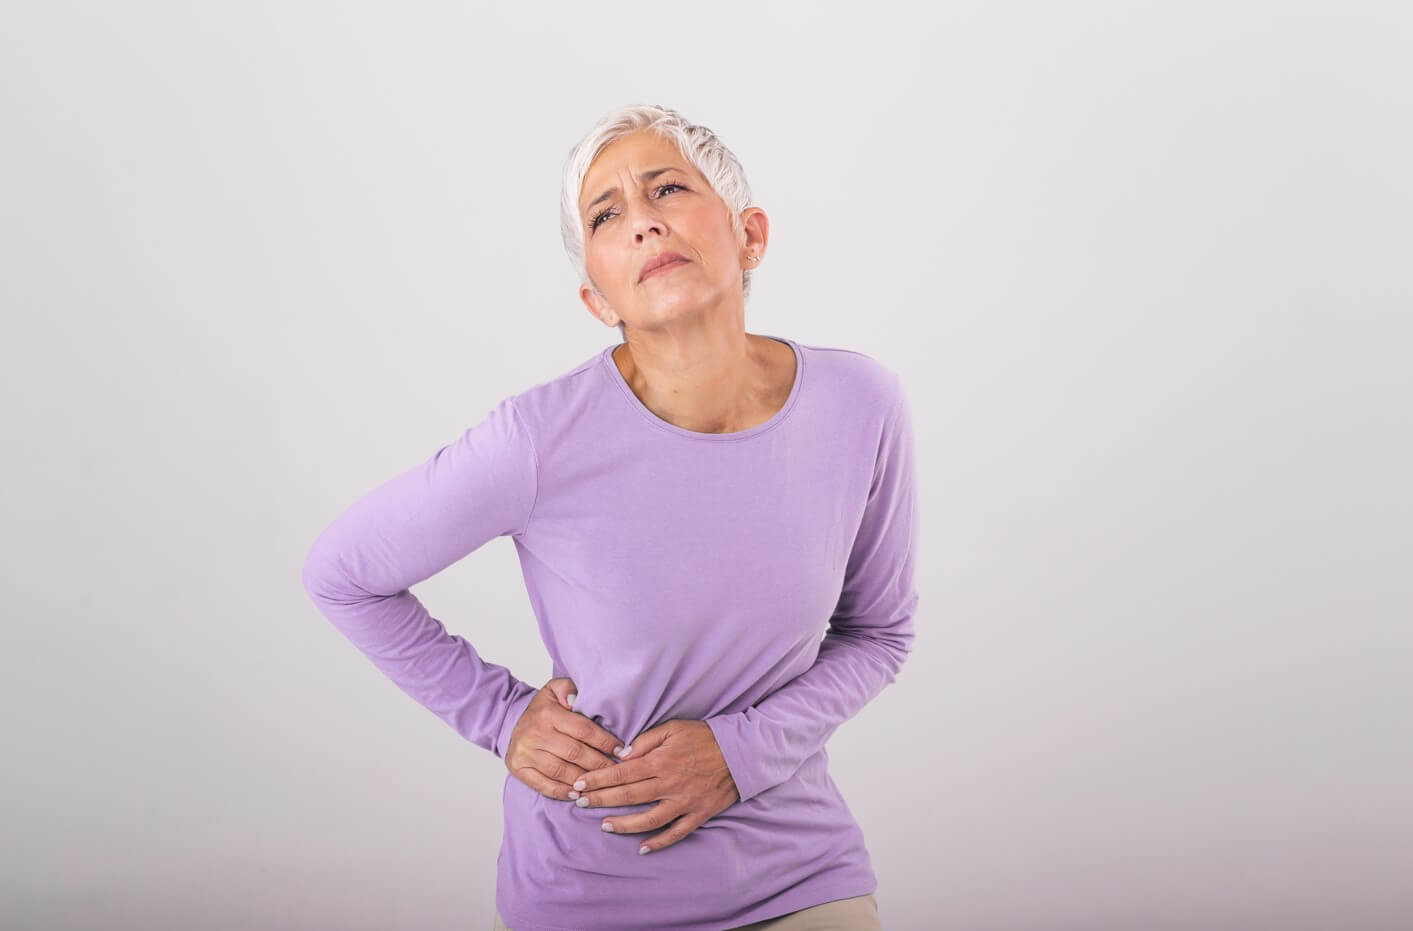 A csípő osteoarthritis (csípő osteoarthritis) - tünetek, okok és kezelés Túlsúly és fájdalom a